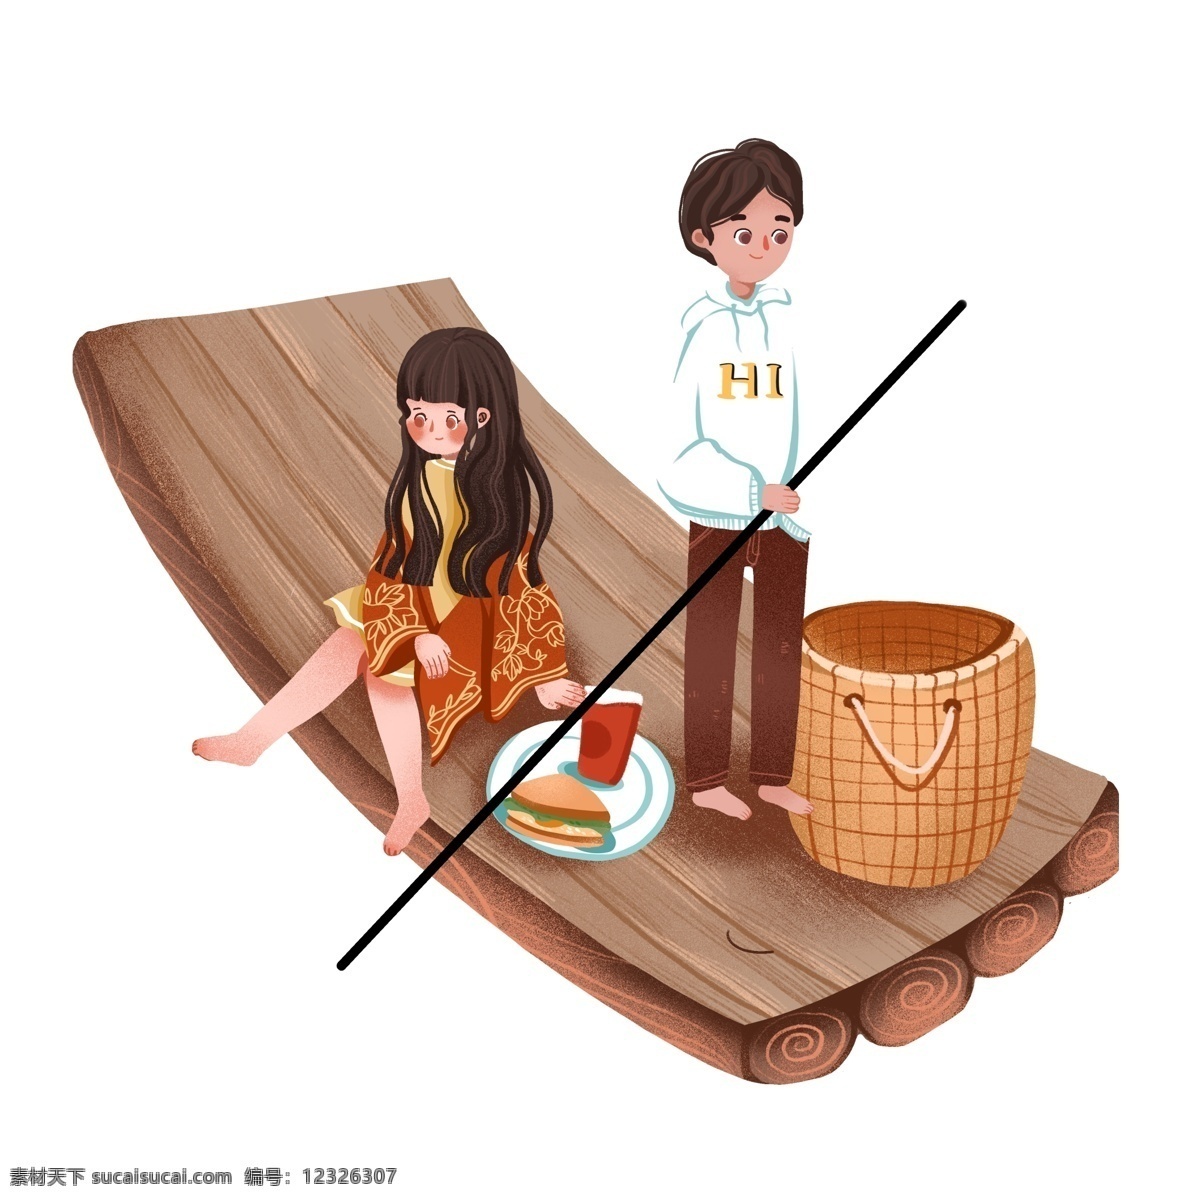 手绘 可爱 情侣 划船 野餐 原创 元素 约会 女孩 男孩 设计元素 木筏 篮子 原创元素